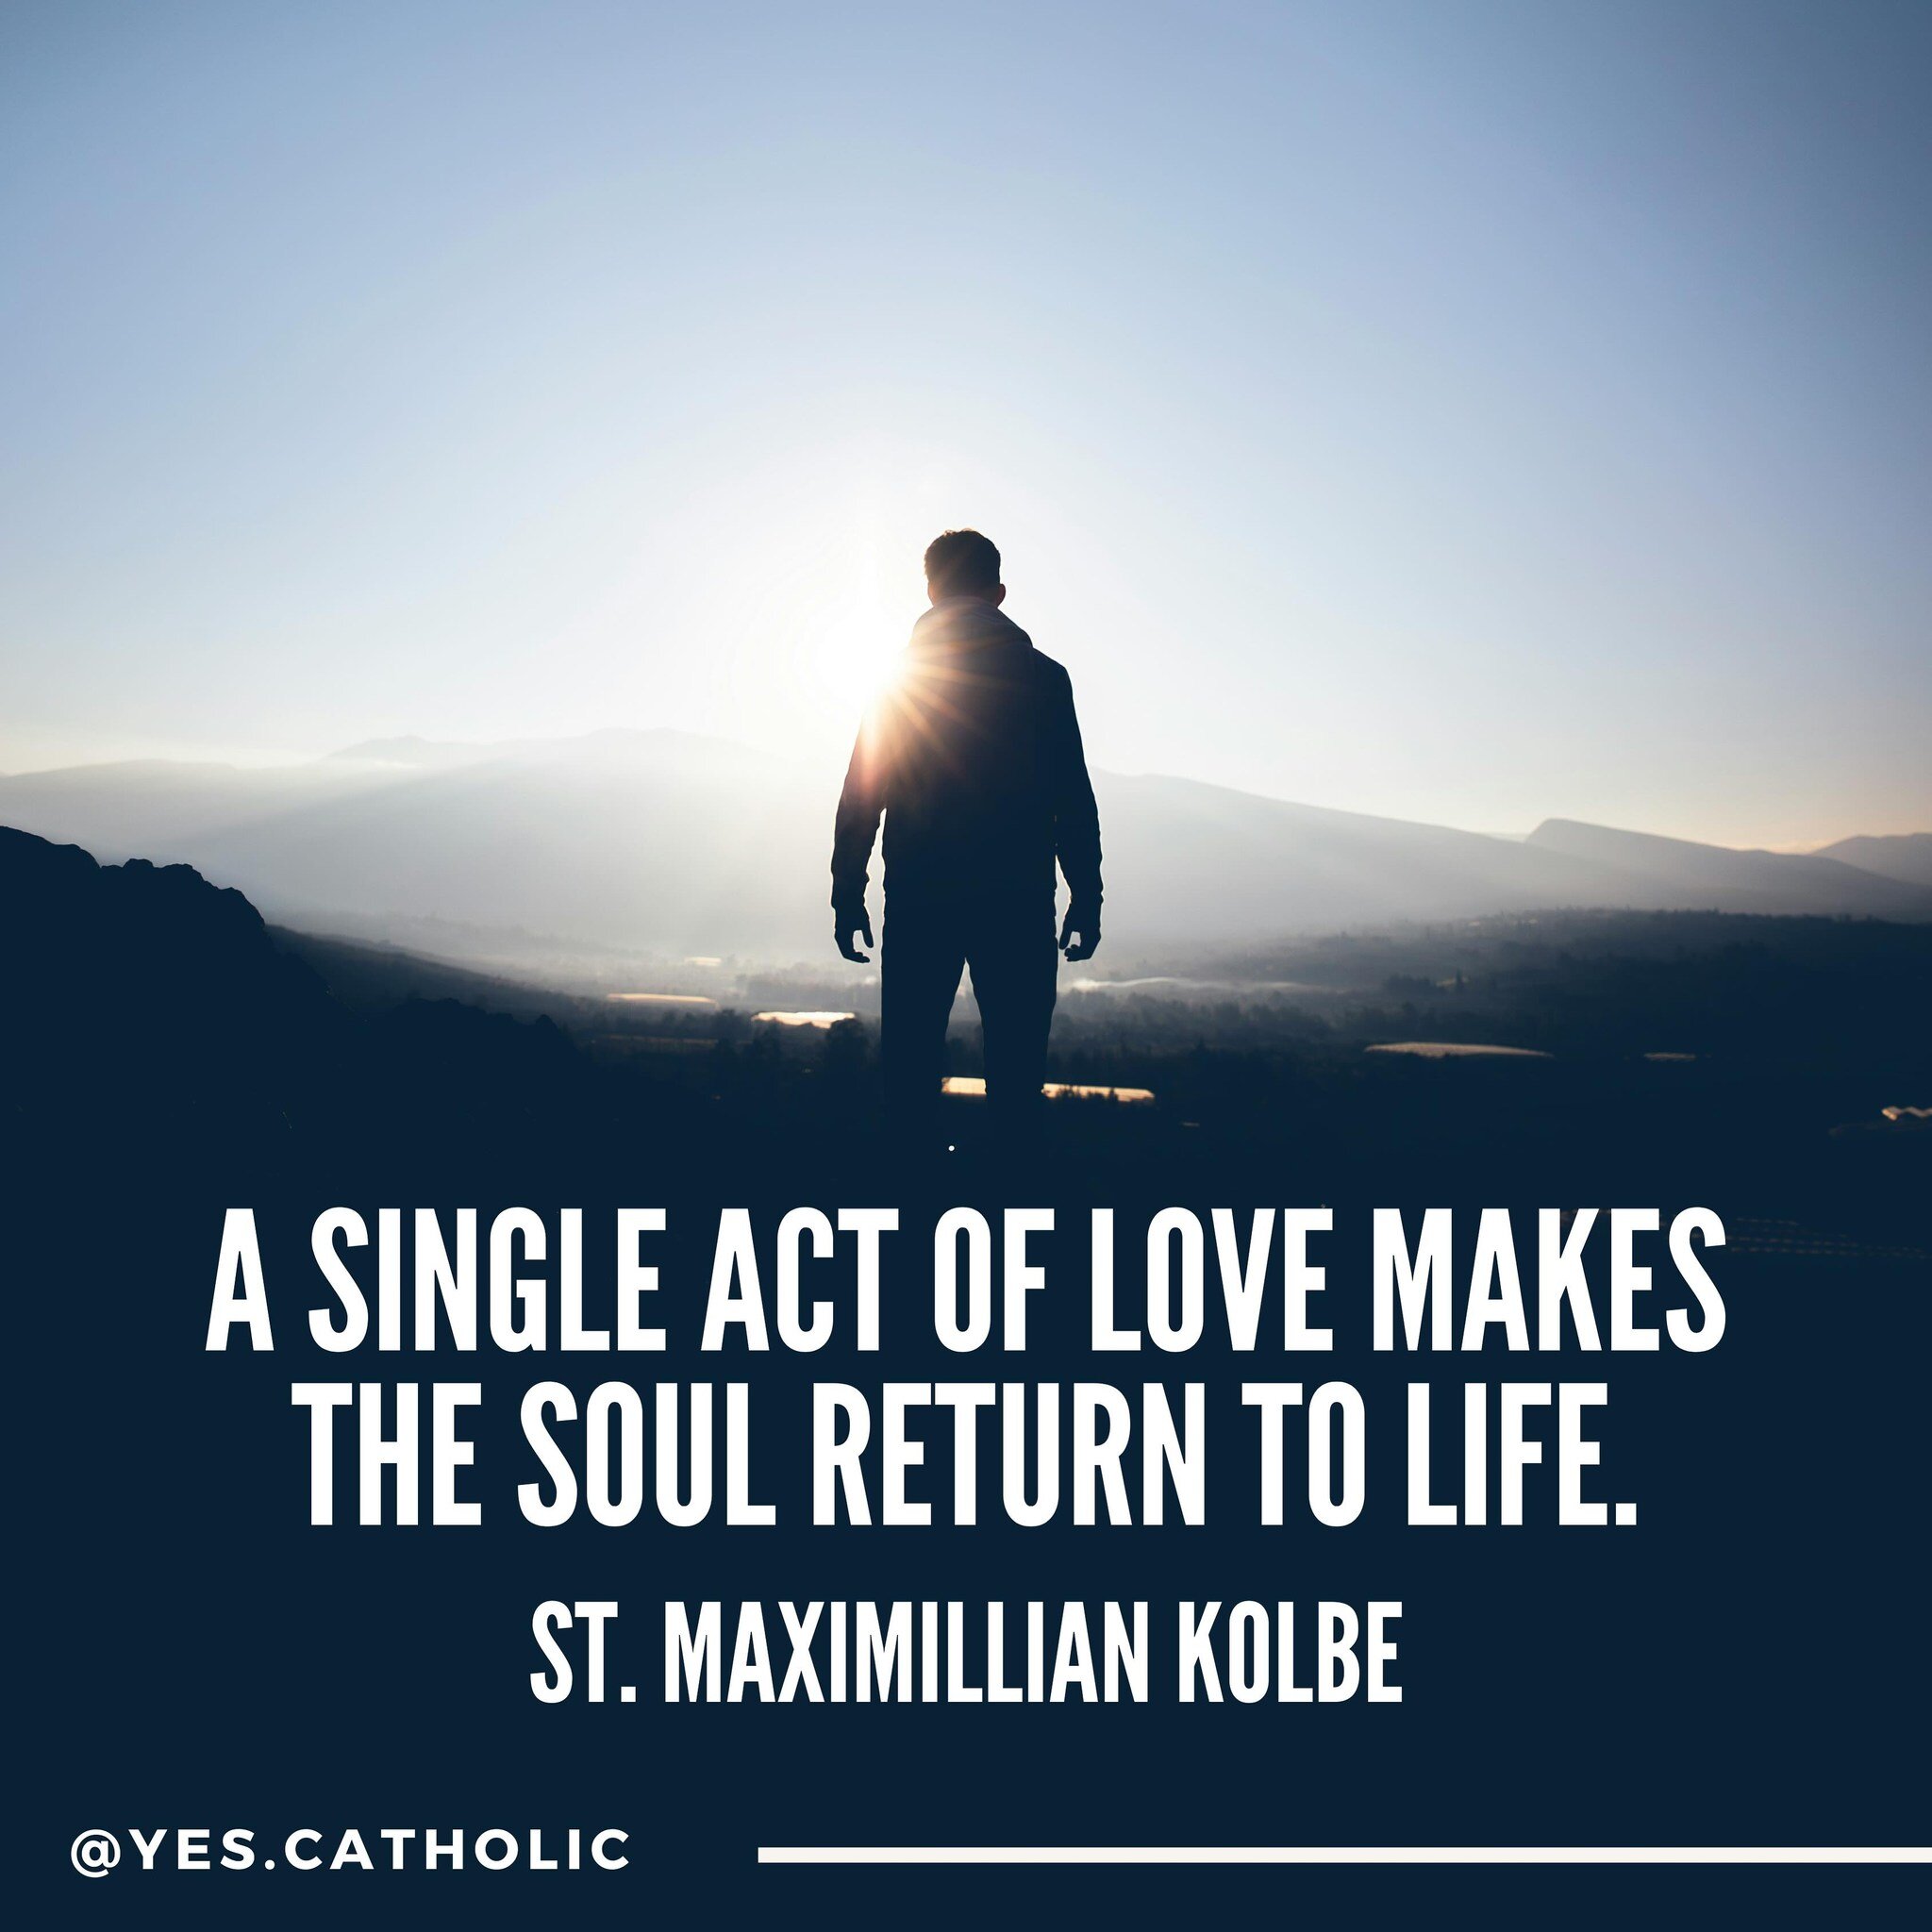 St. Maximillian Kolbe, pray for us!